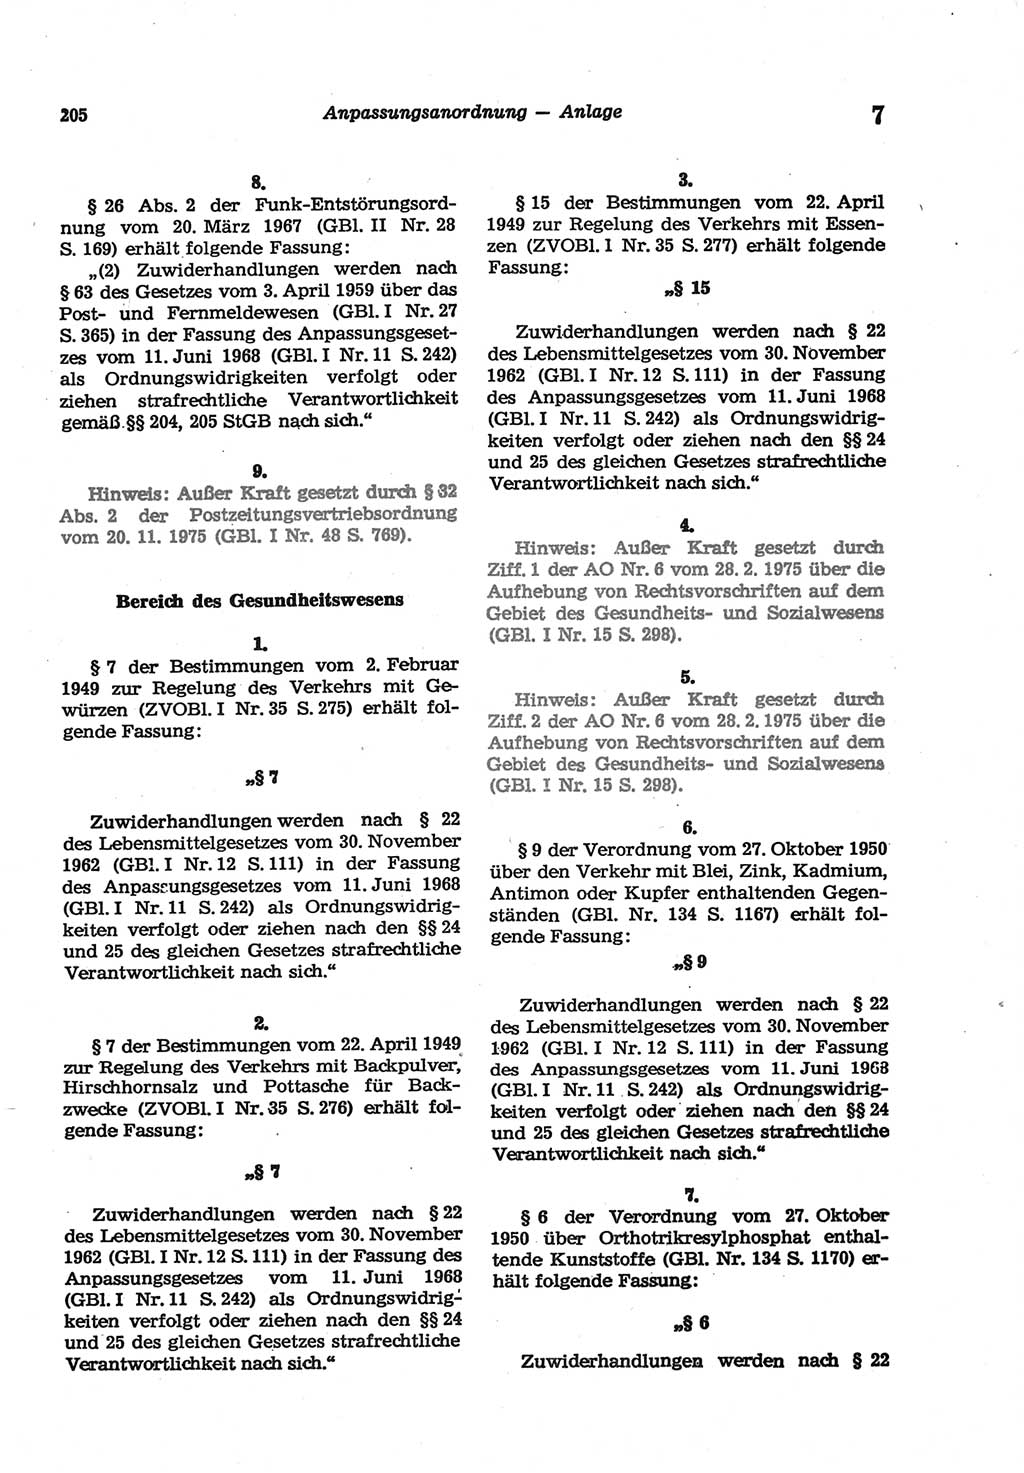 Strafgesetzbuch (StGB) der Deutschen Demokratischen Republik (DDR) und angrenzende Gesetze und Bestimmungen 1977, Seite 205 (StGB DDR Ges. Best. 1977, S. 205)